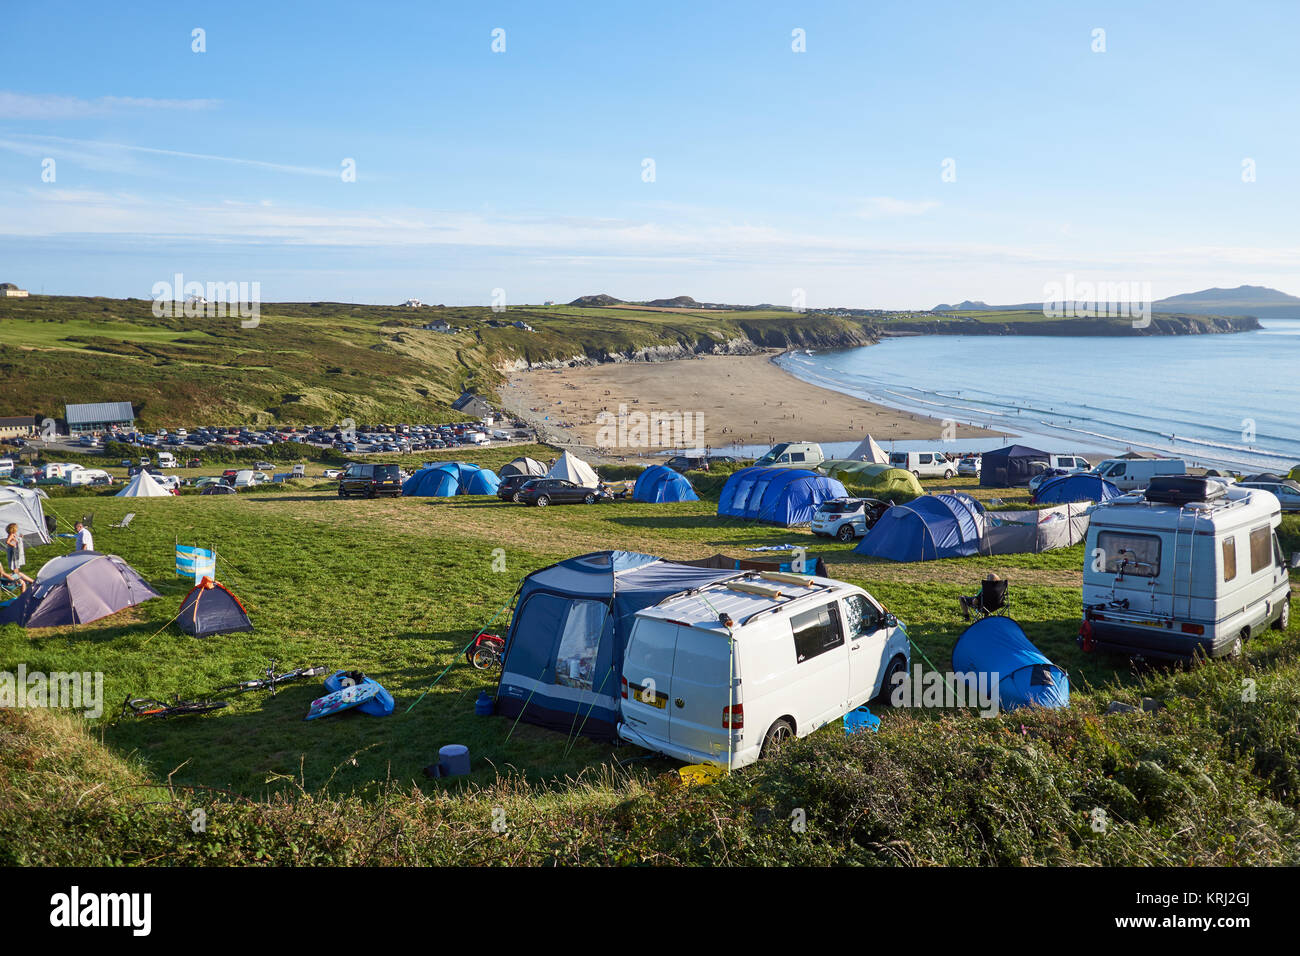 Spiaggia campeggio pieno di camper e tende a Whitesands Bay, Pembrokeshire, Galles Foto Stock